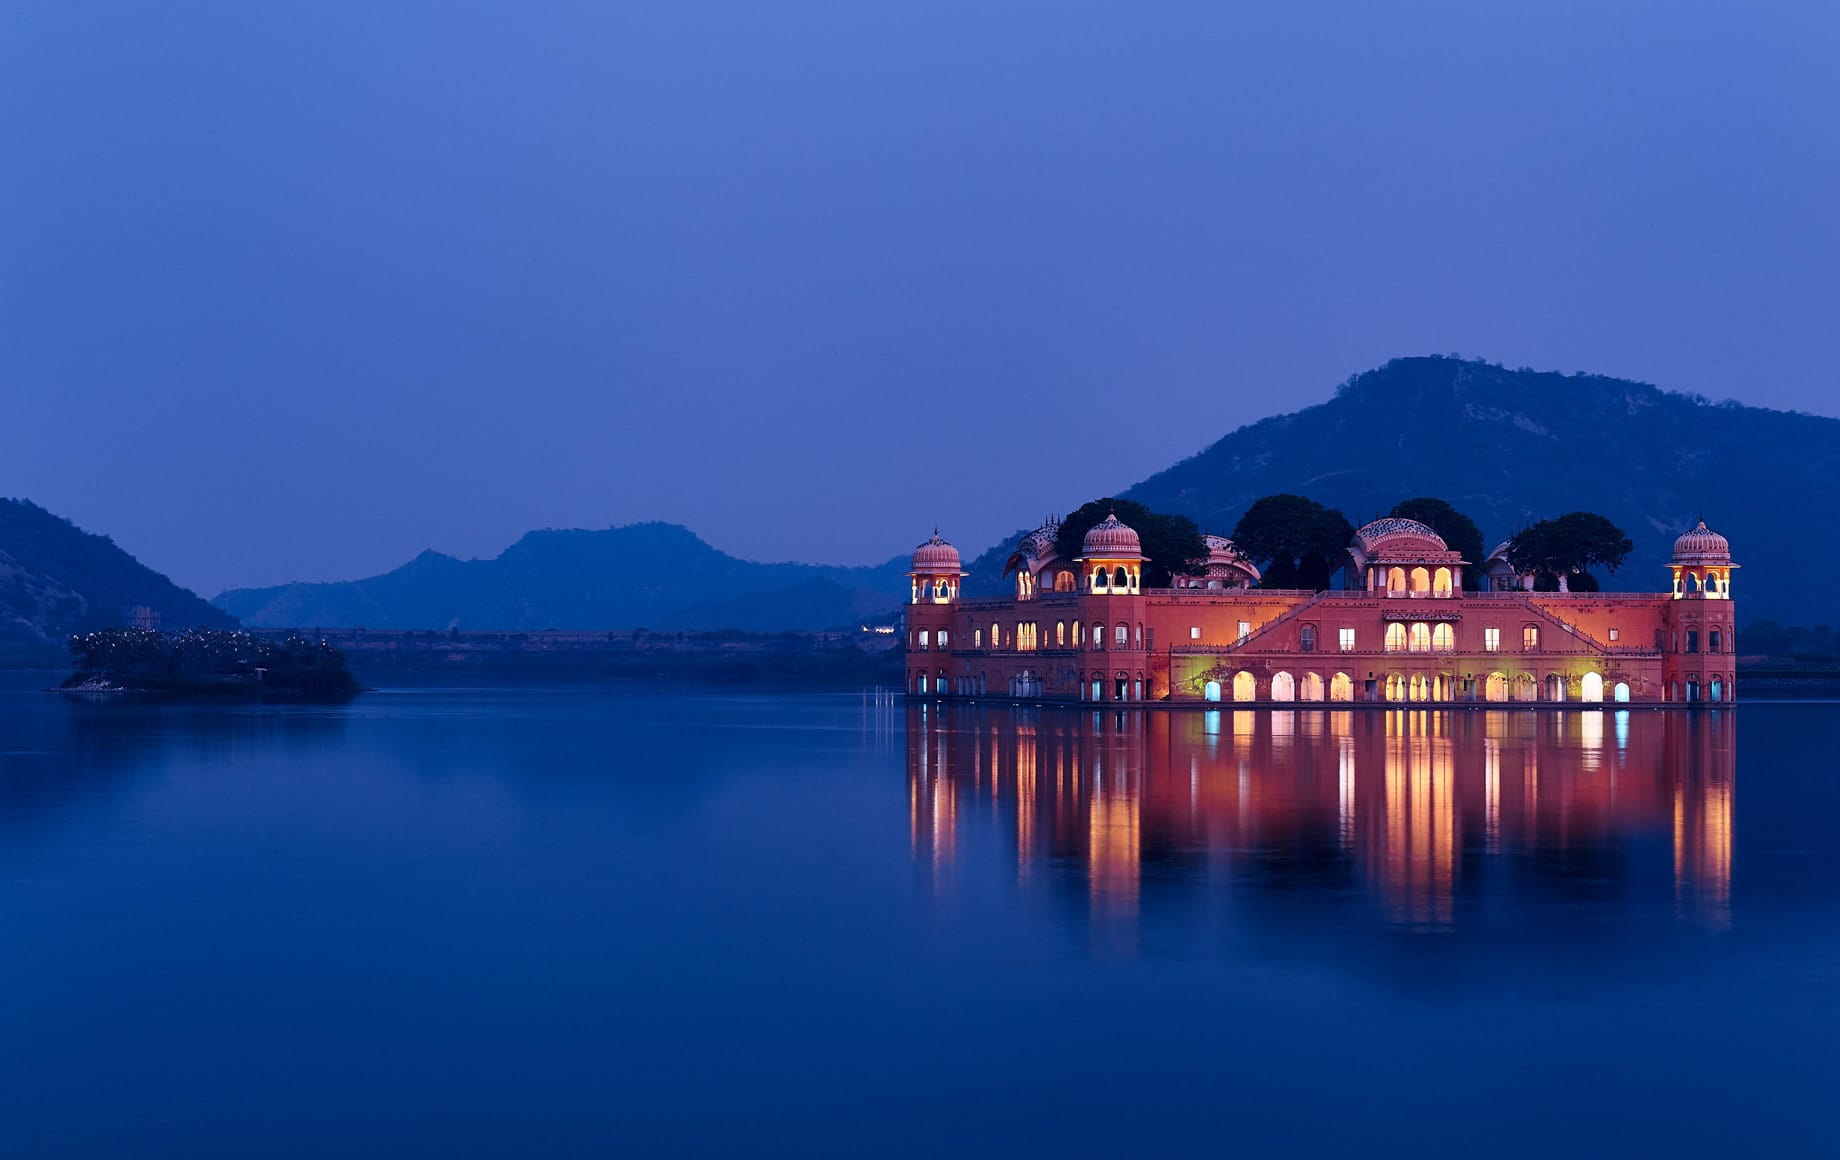 Beautiful Lake Scenery of Jaipur